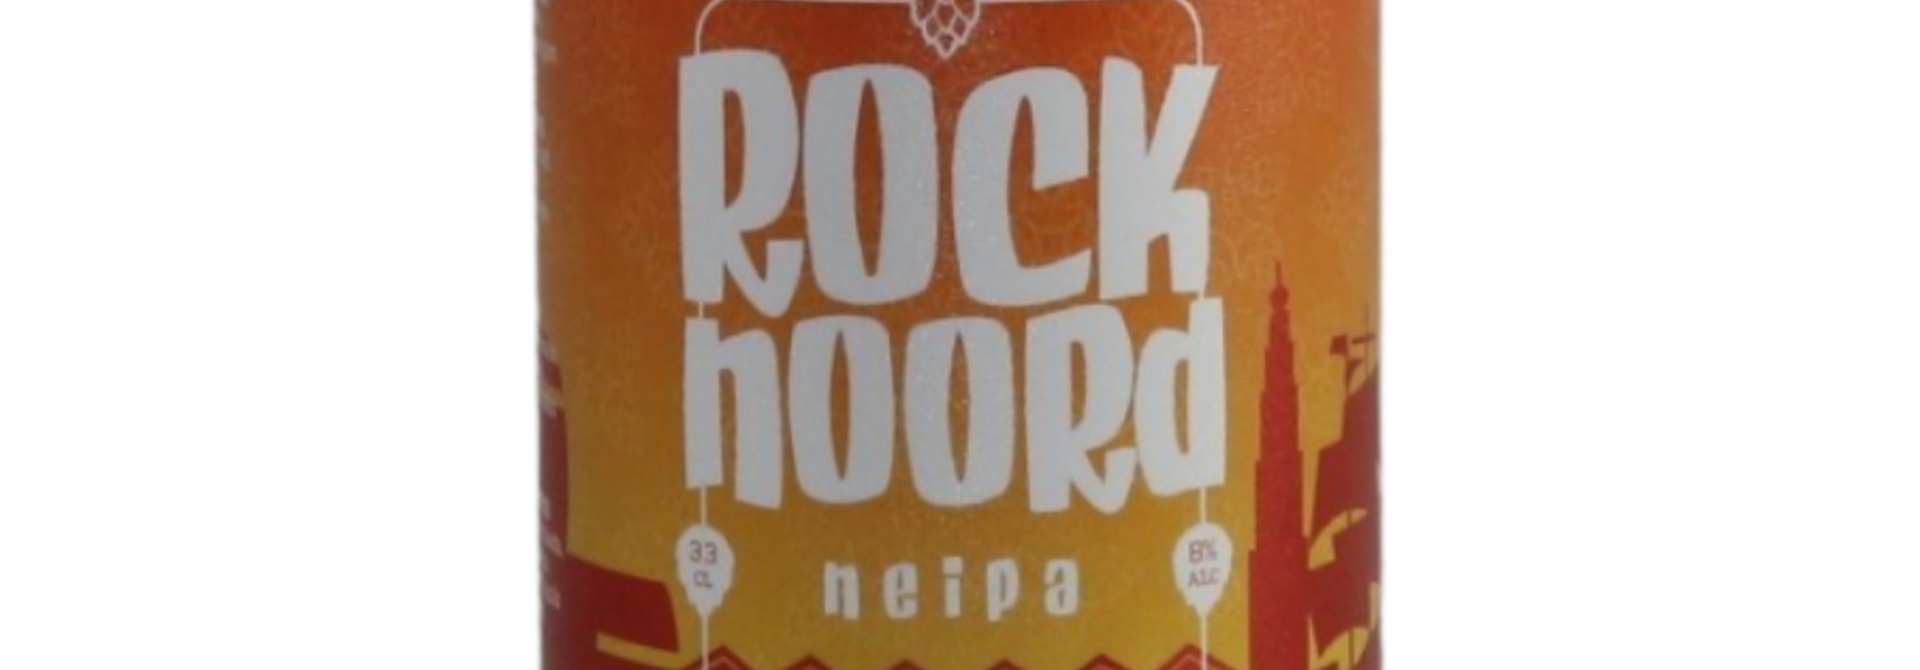 Rock Noord Neipa 33CL 8%